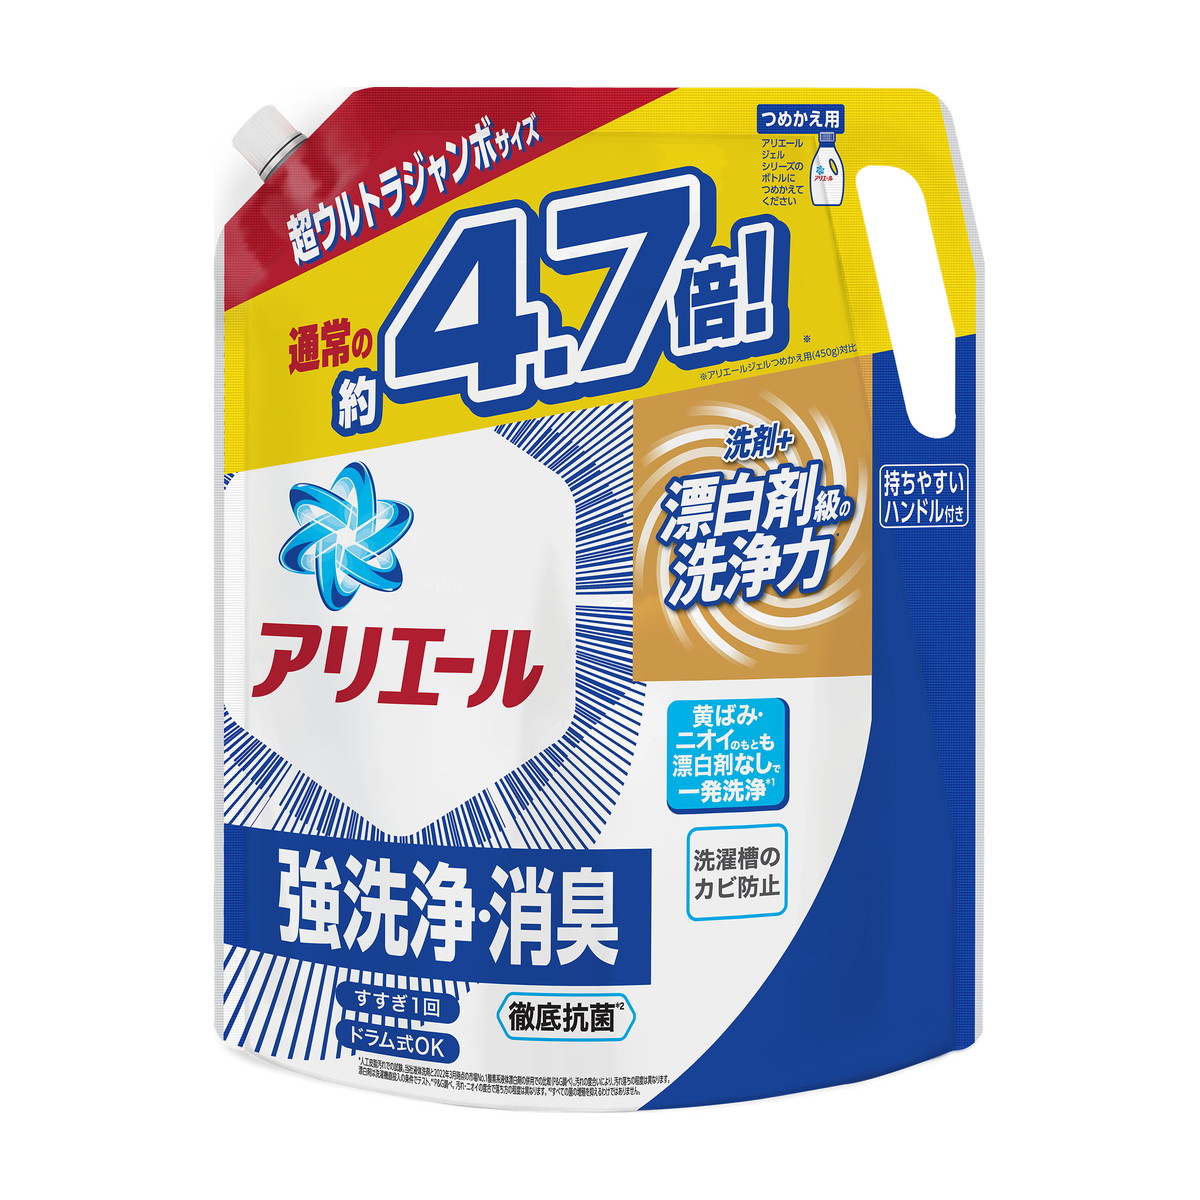 P&G アリエール ジェル [つめかえ用] 2.12kg × 1個 アリエール 液体洗剤の商品画像